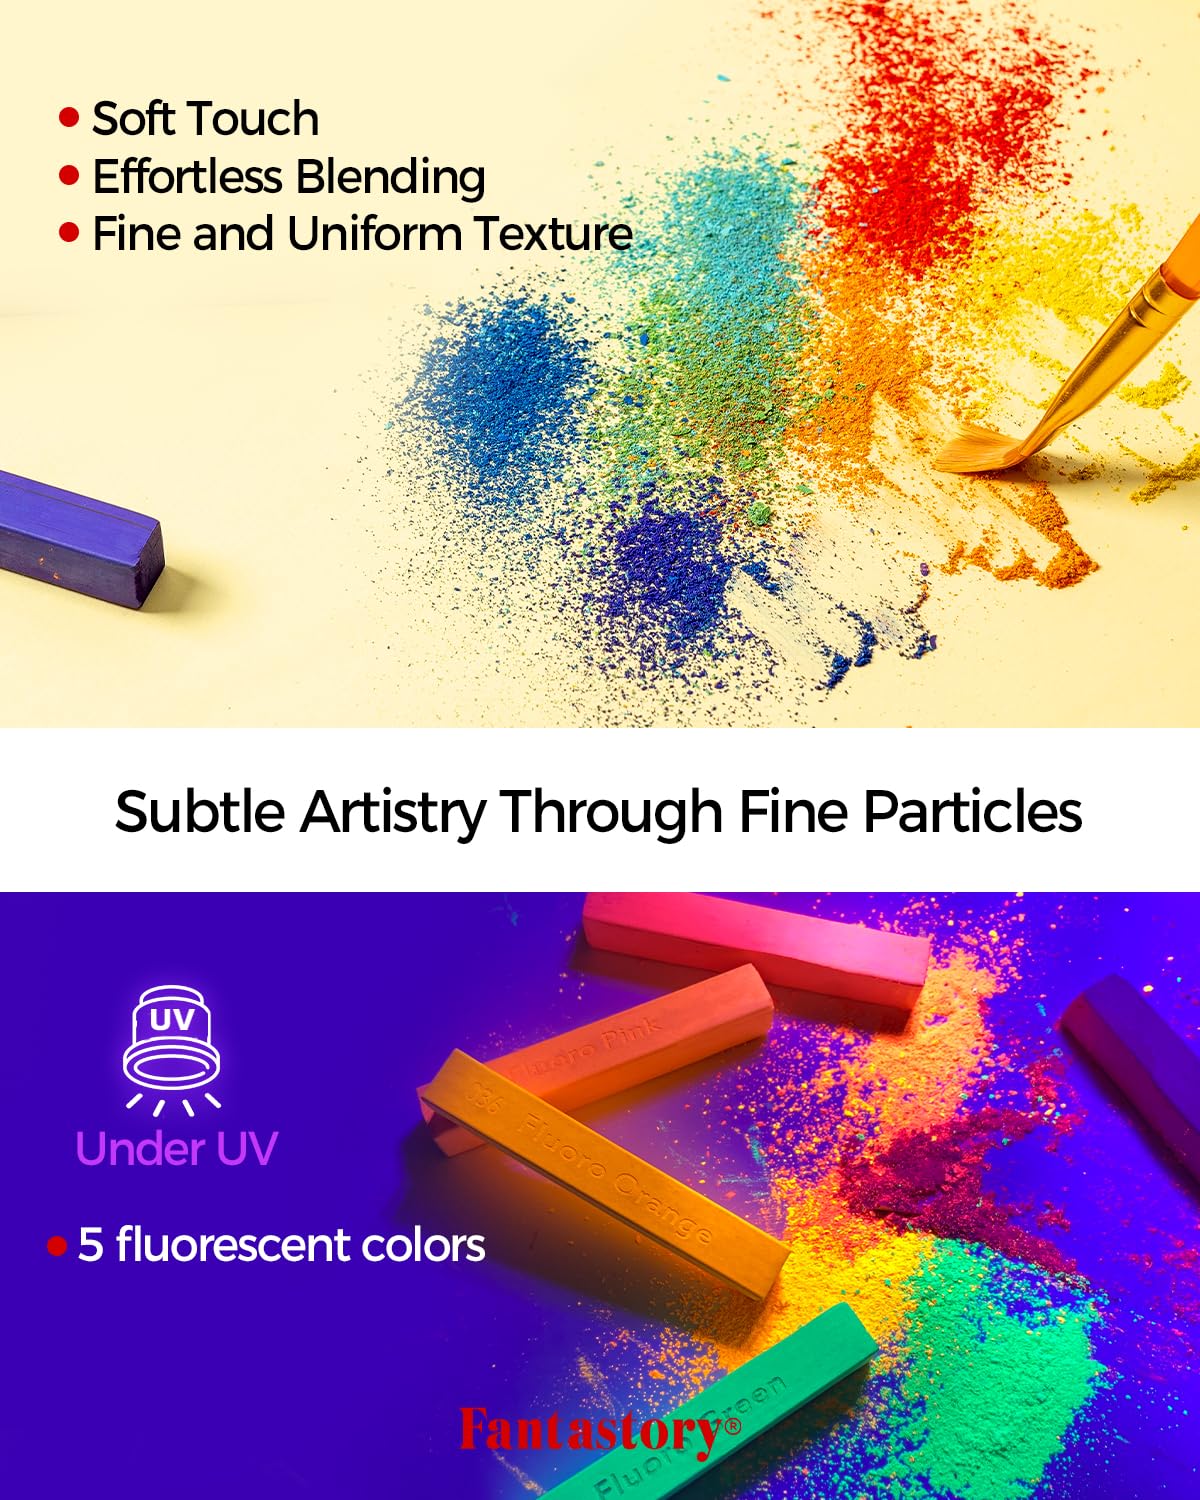 Fantastory Face Paint Kit 158pcs, 20 Colors, Halloween Ultimate